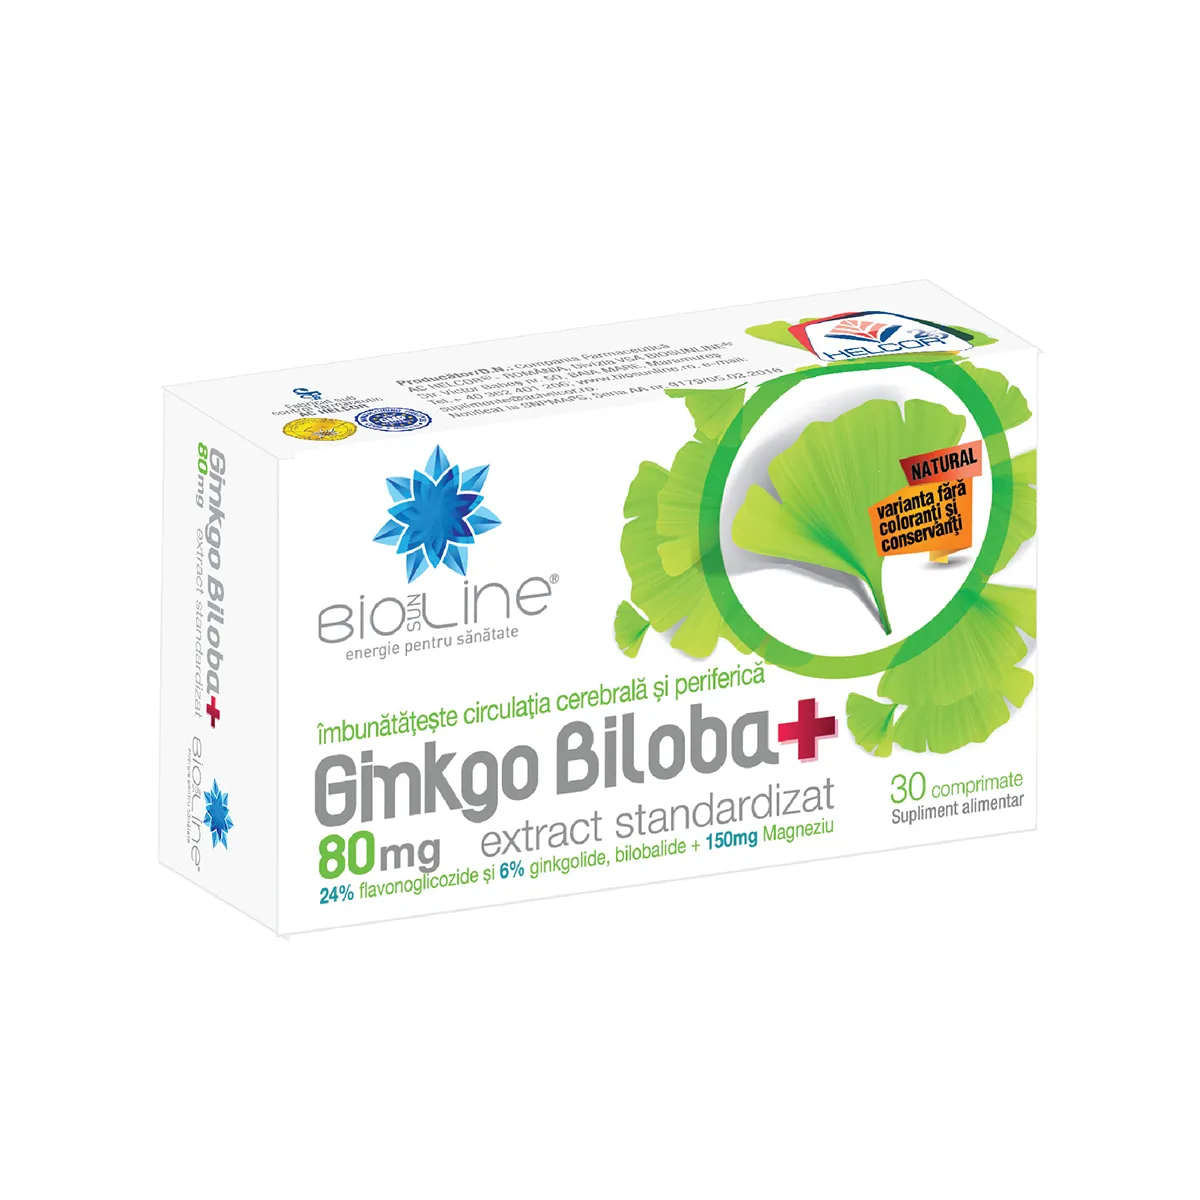 Ginkgo Biloba 80mg, 30 comprimate, BioSunLine